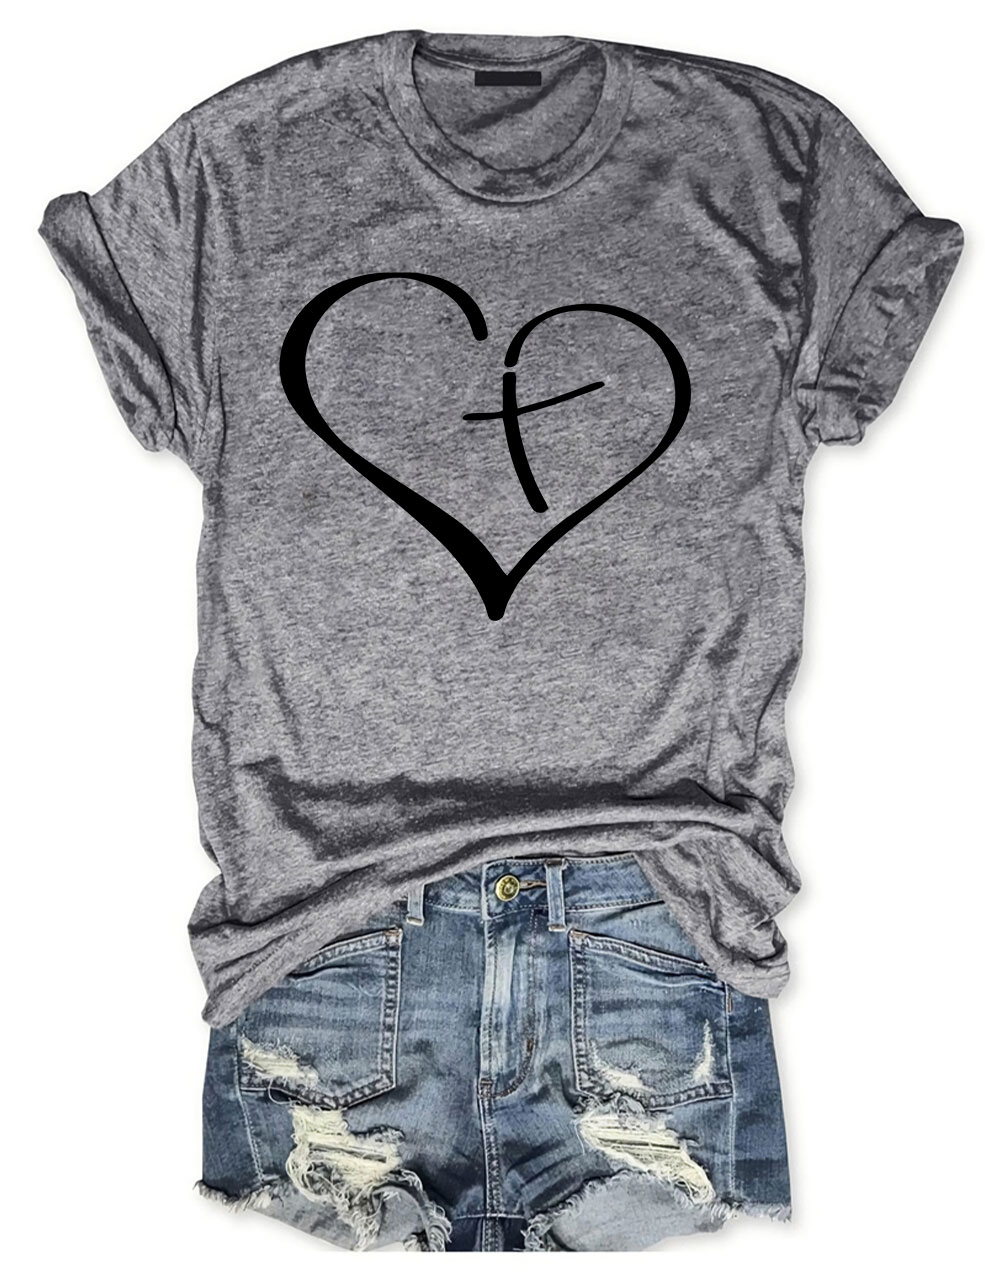 Christian Heart T-shirt